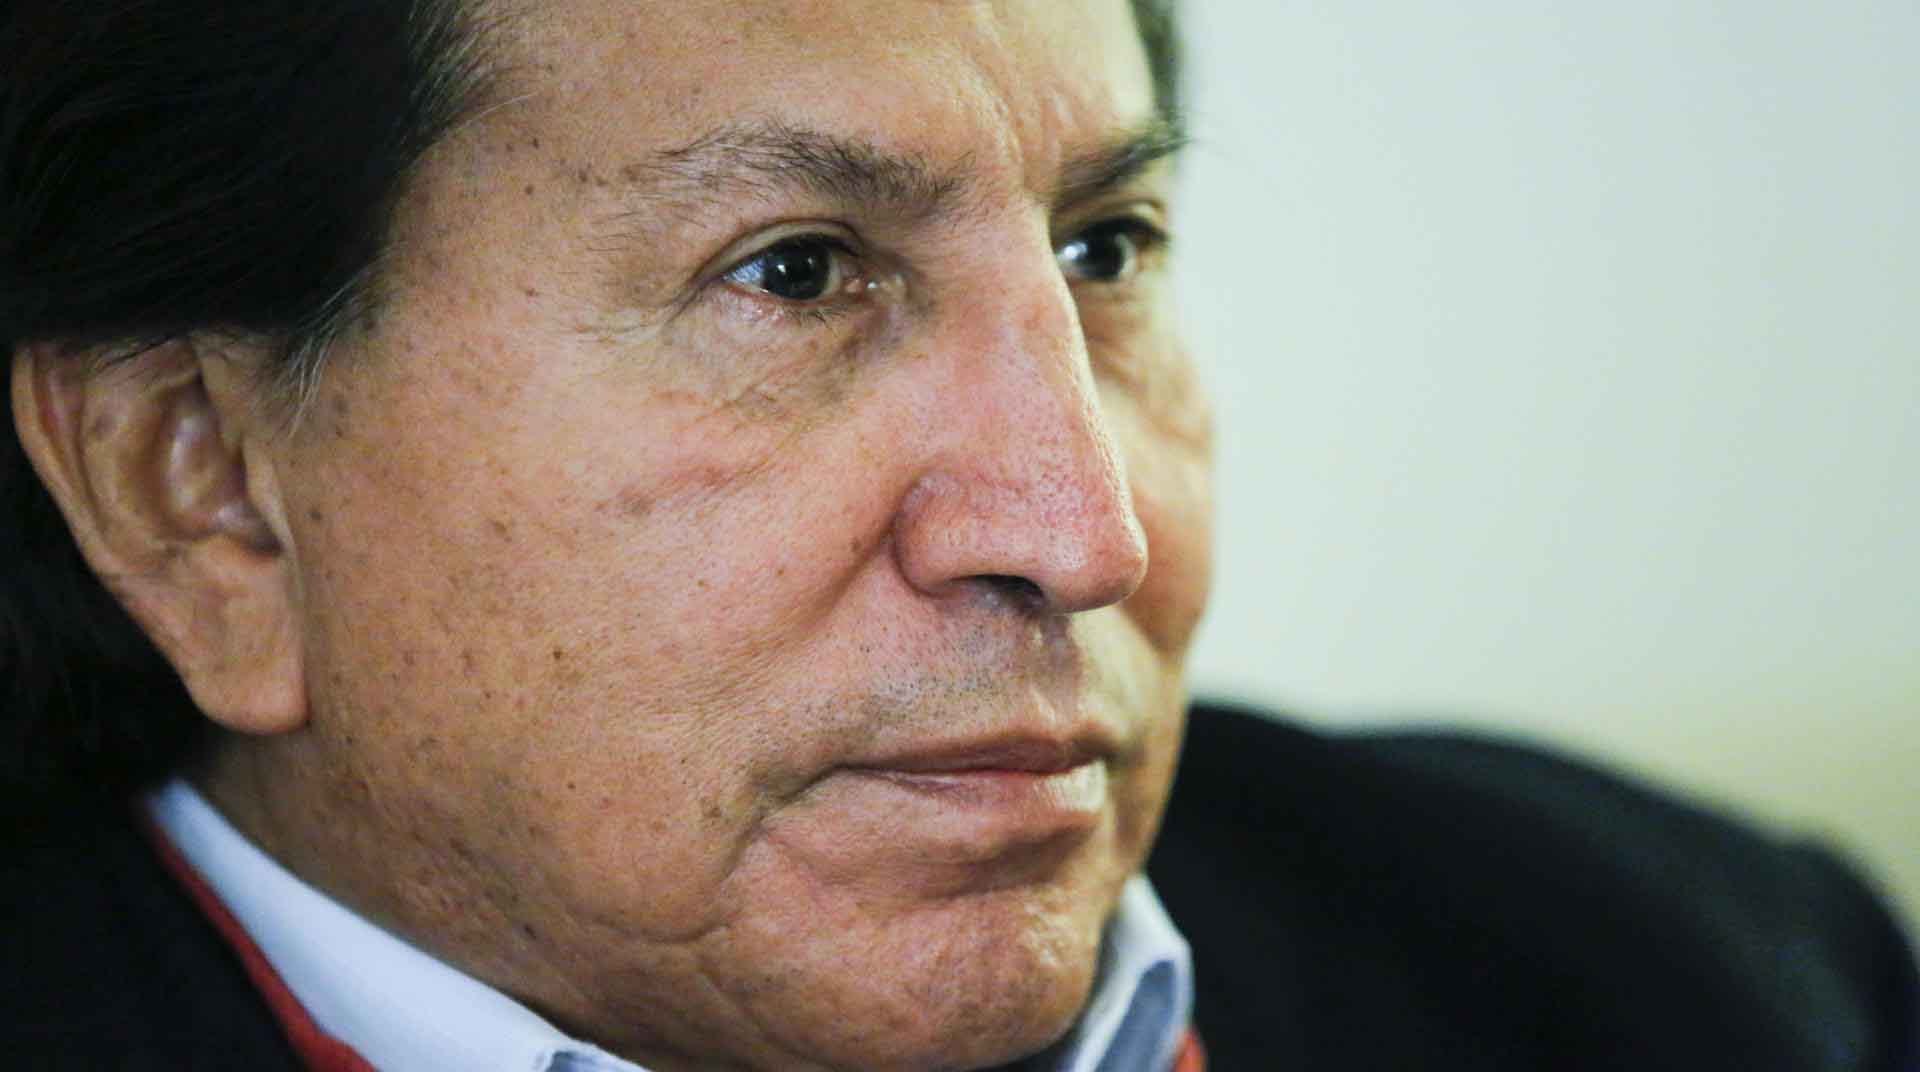 El expresidente de Perú Alejandro Toledo presentó dos recursos más de apelación ante la justicia estadounidense horas antes de que acabe el plazo de presentarse ante la justicia e iniciar el proceso de extradición. Foto: EFE